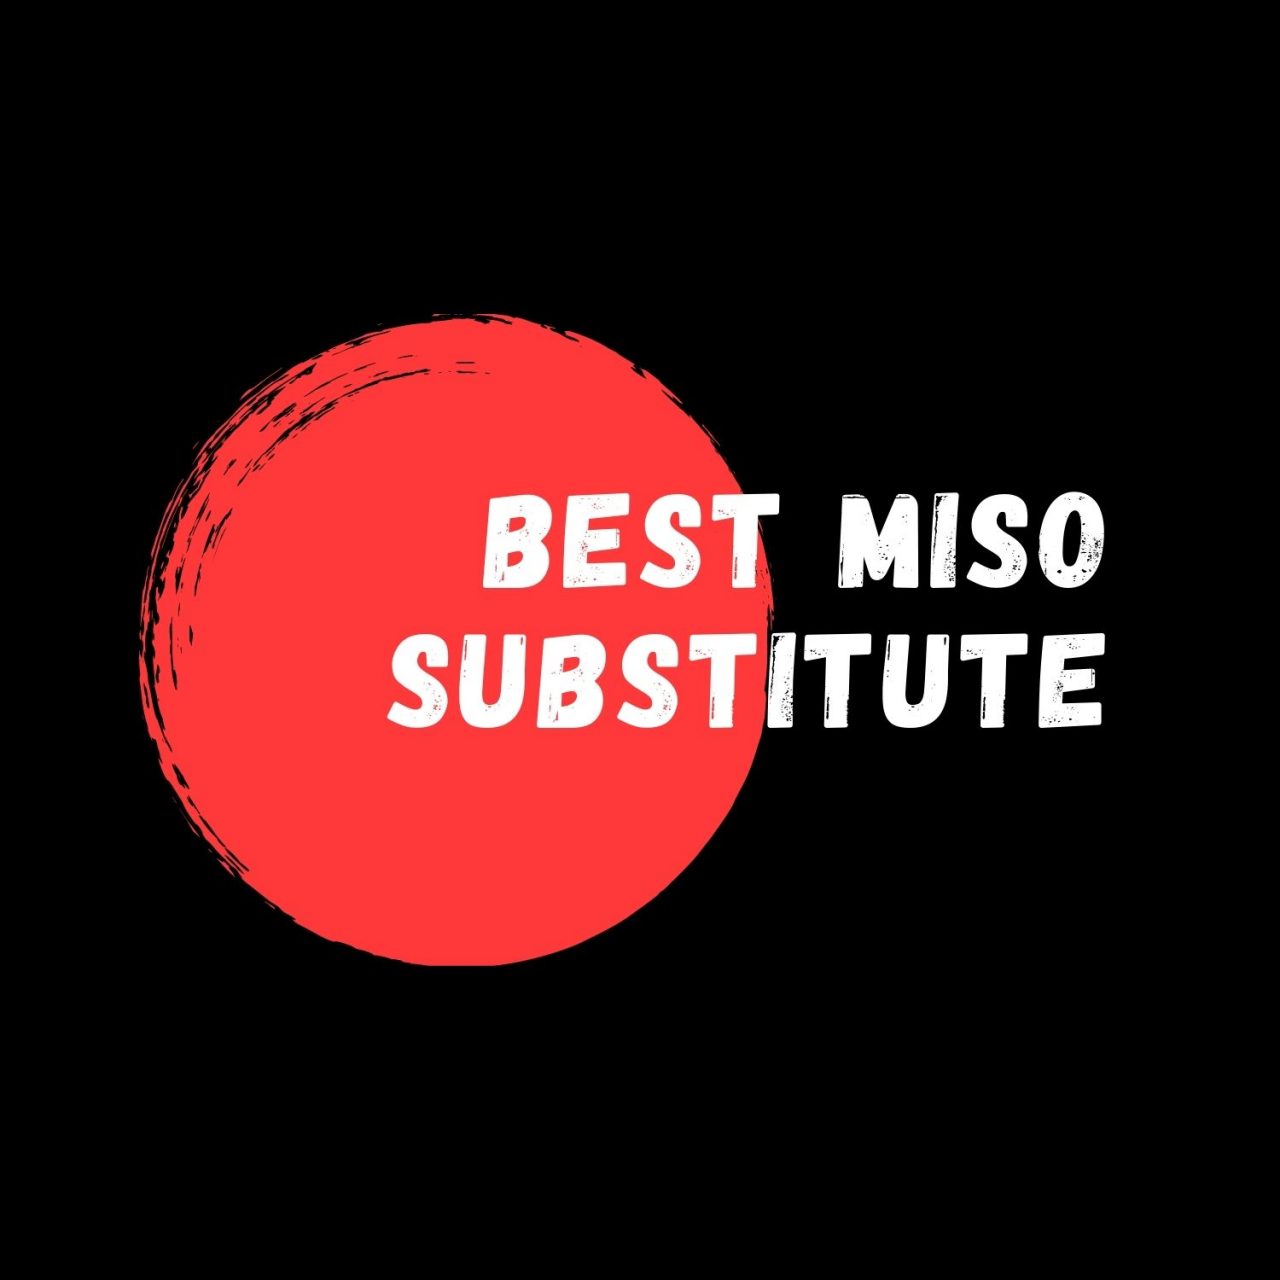 Best Miso Substitute E1629469272300 